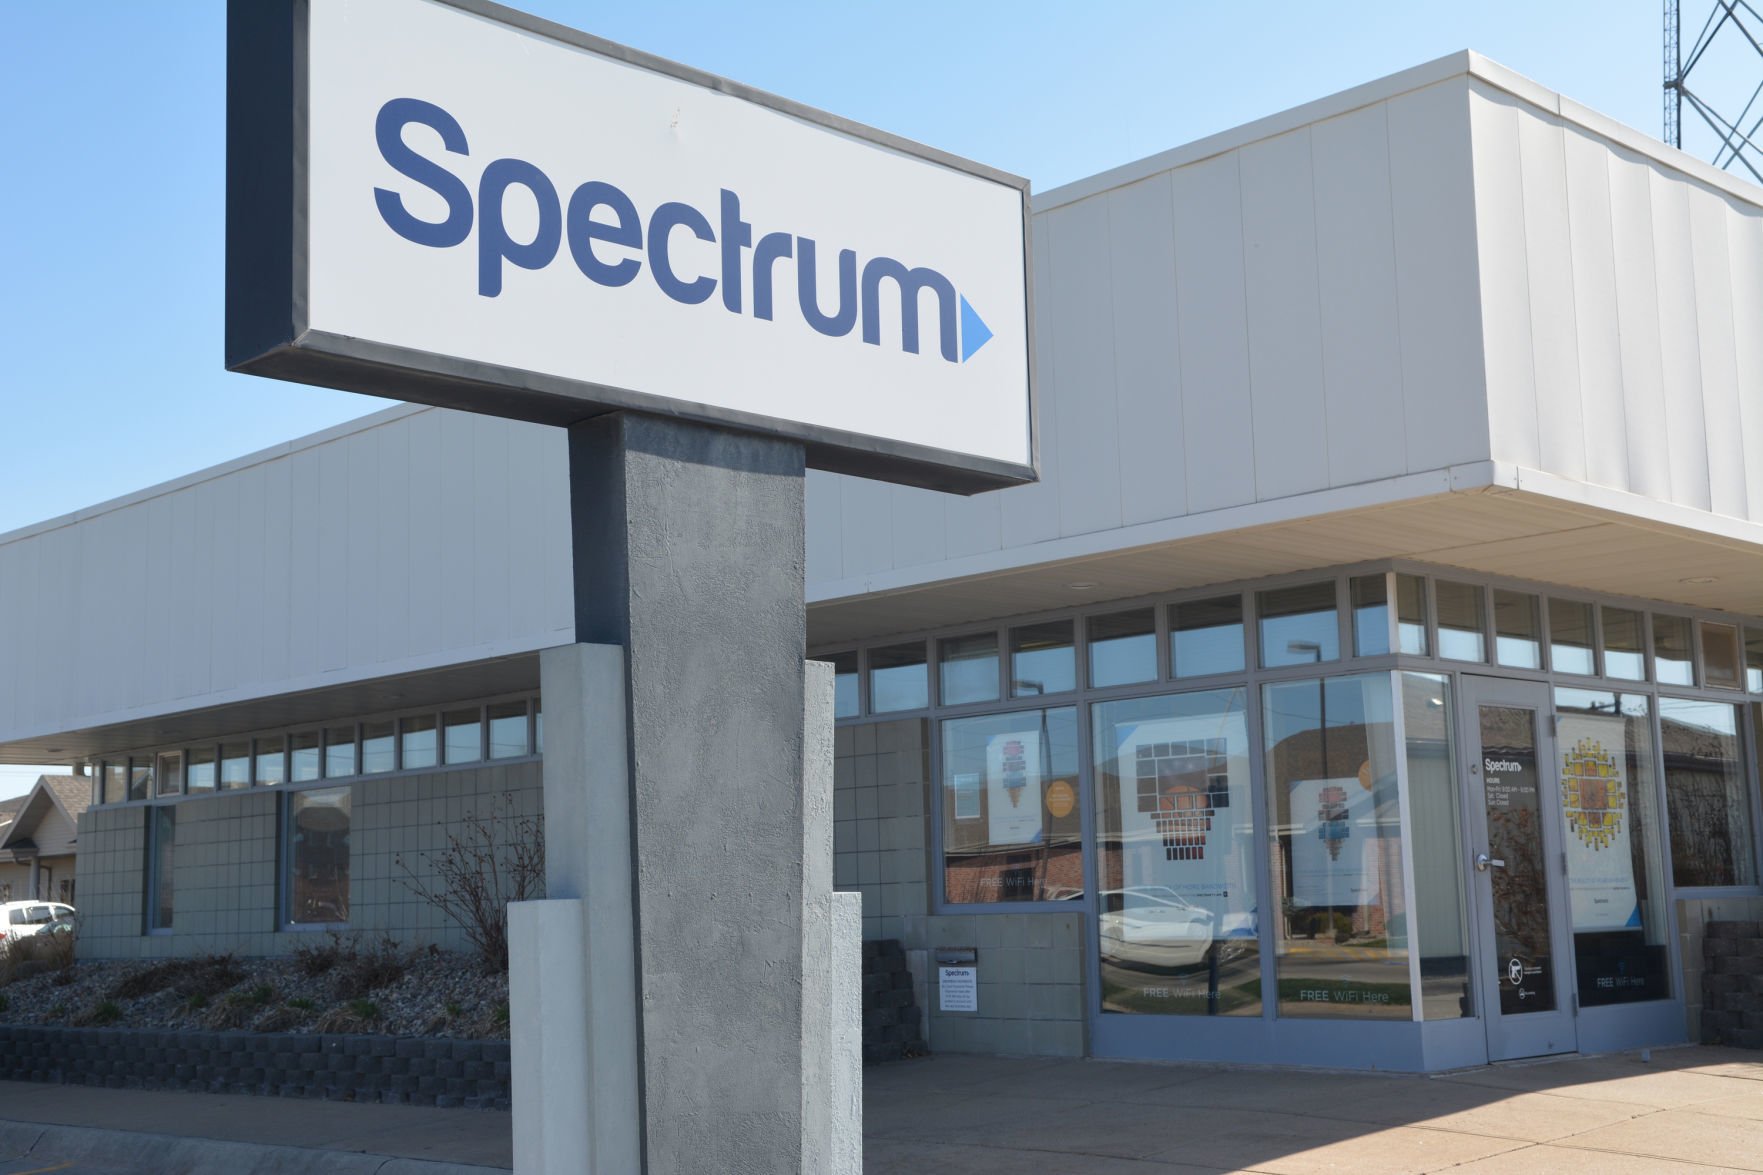 spectrum download speed